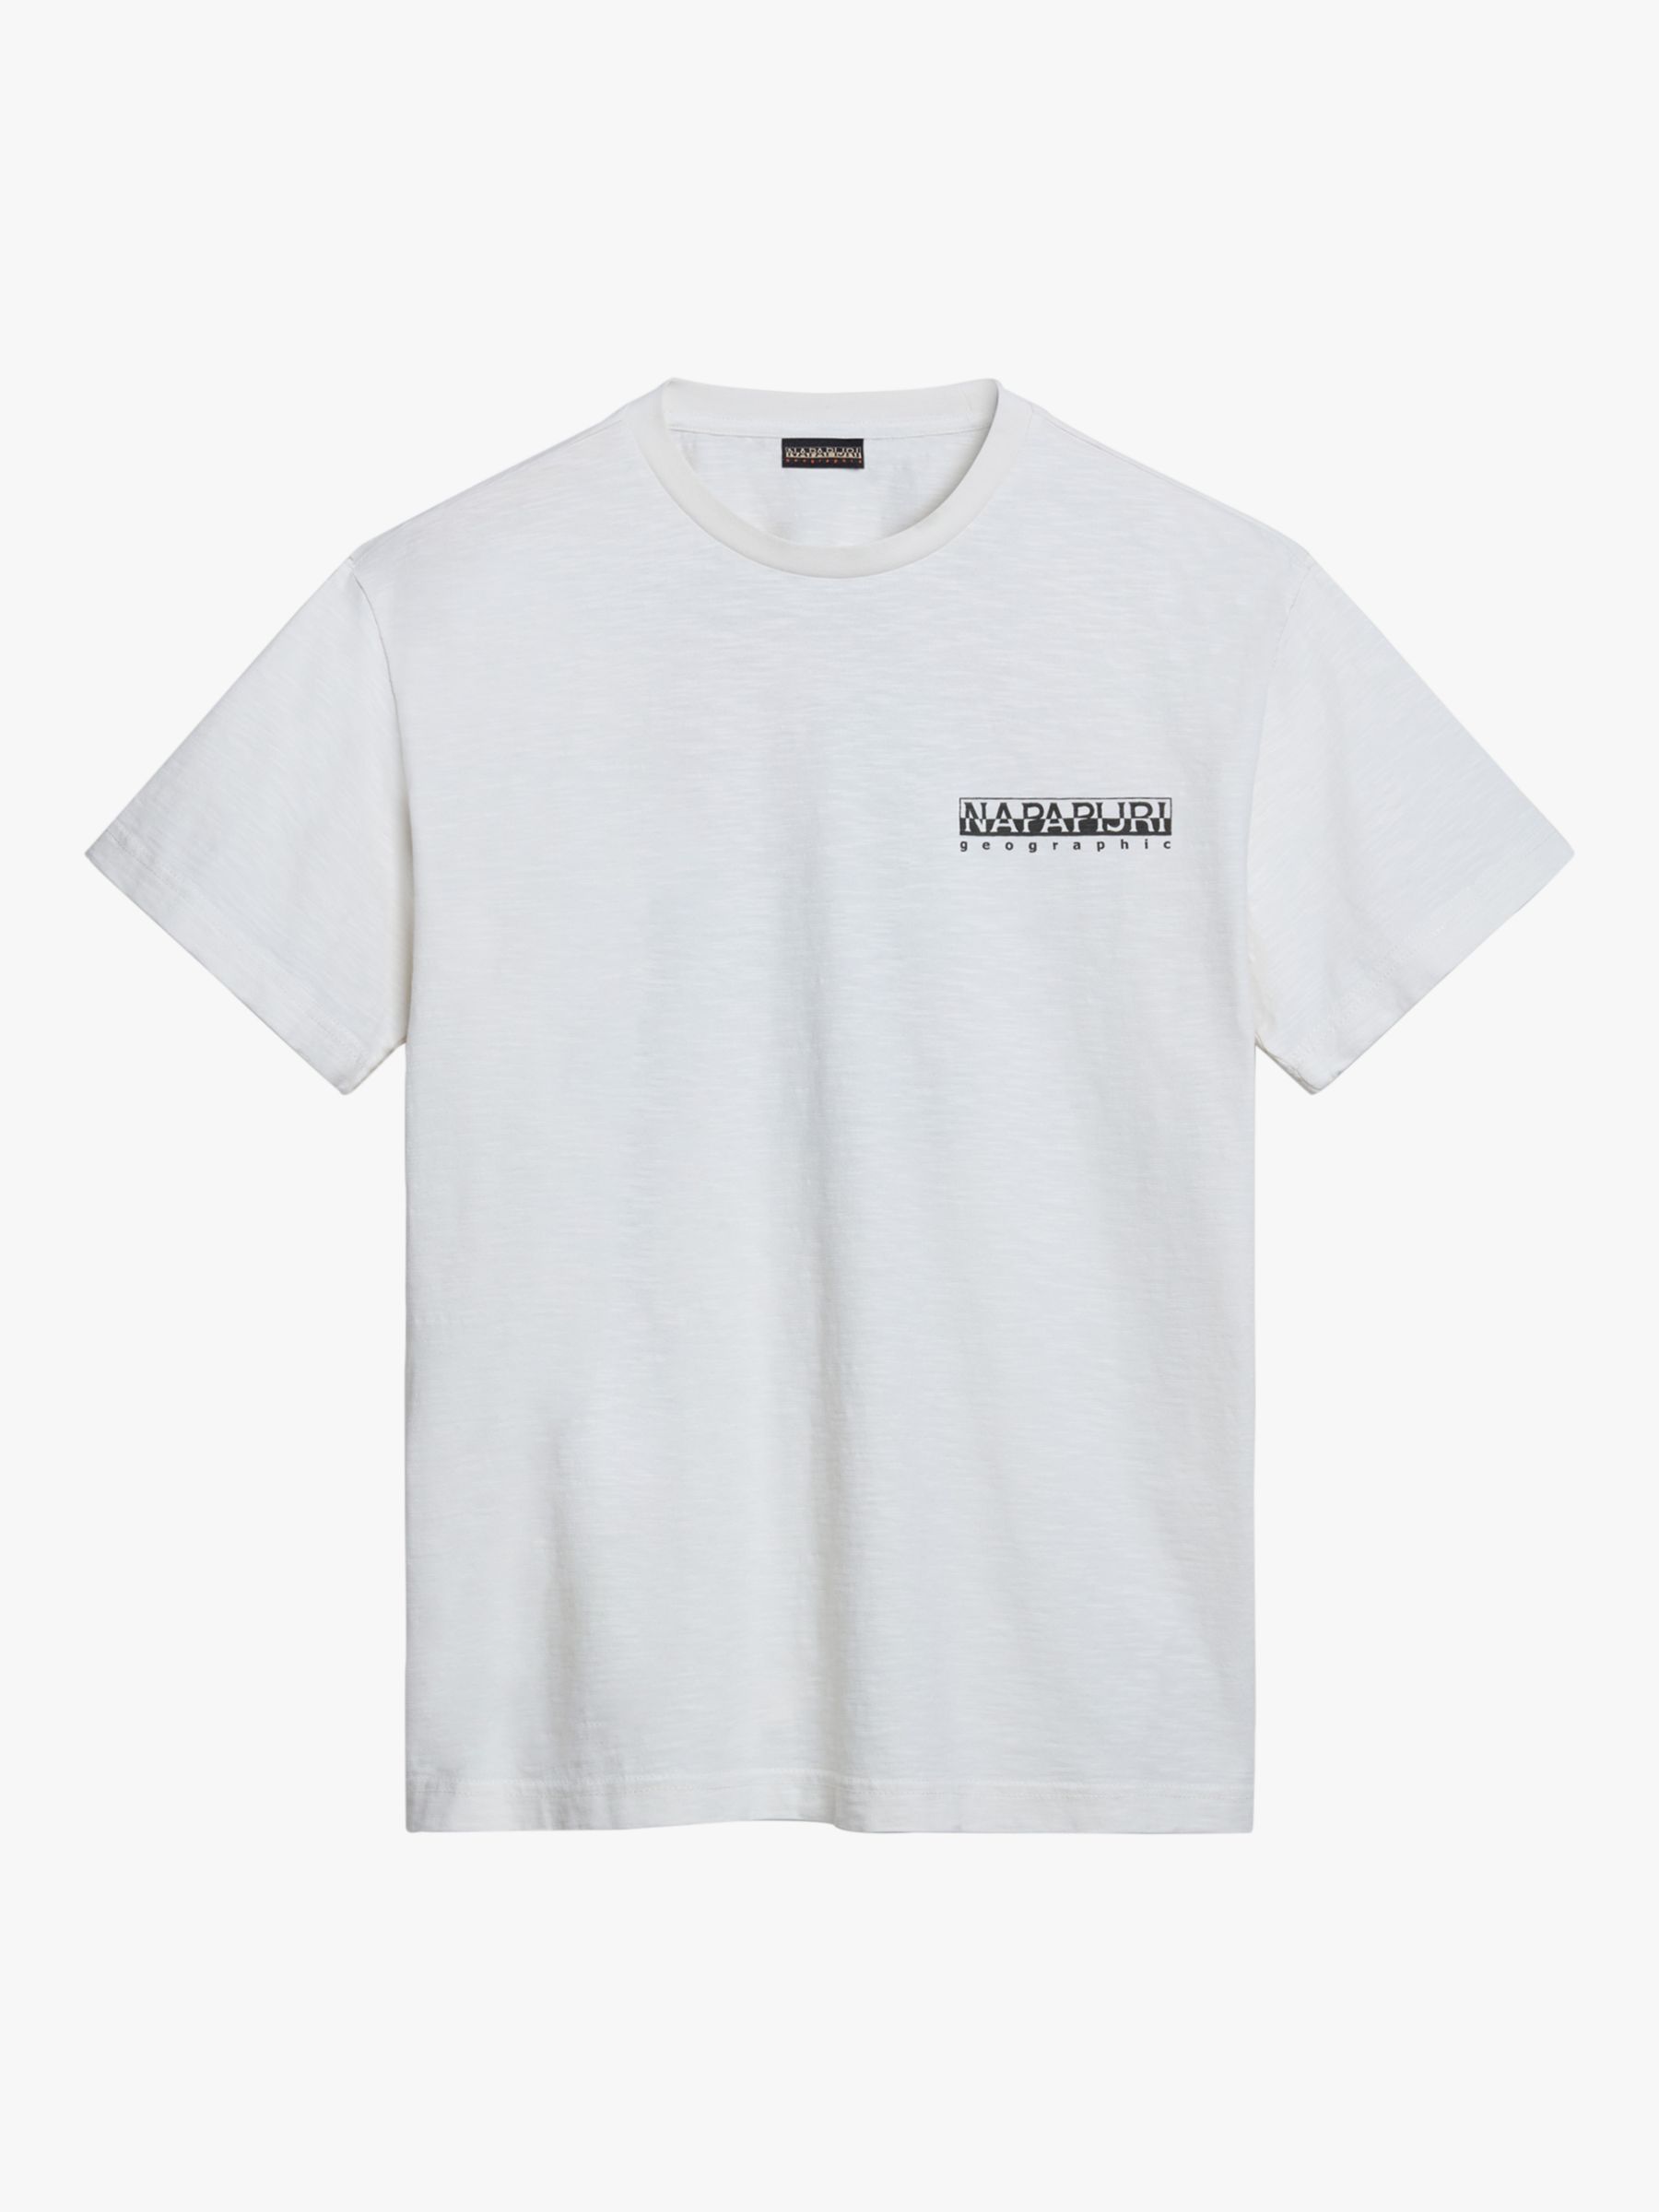 Napapijri Martre Short Sleeve T-Shirt, White/Multi, L